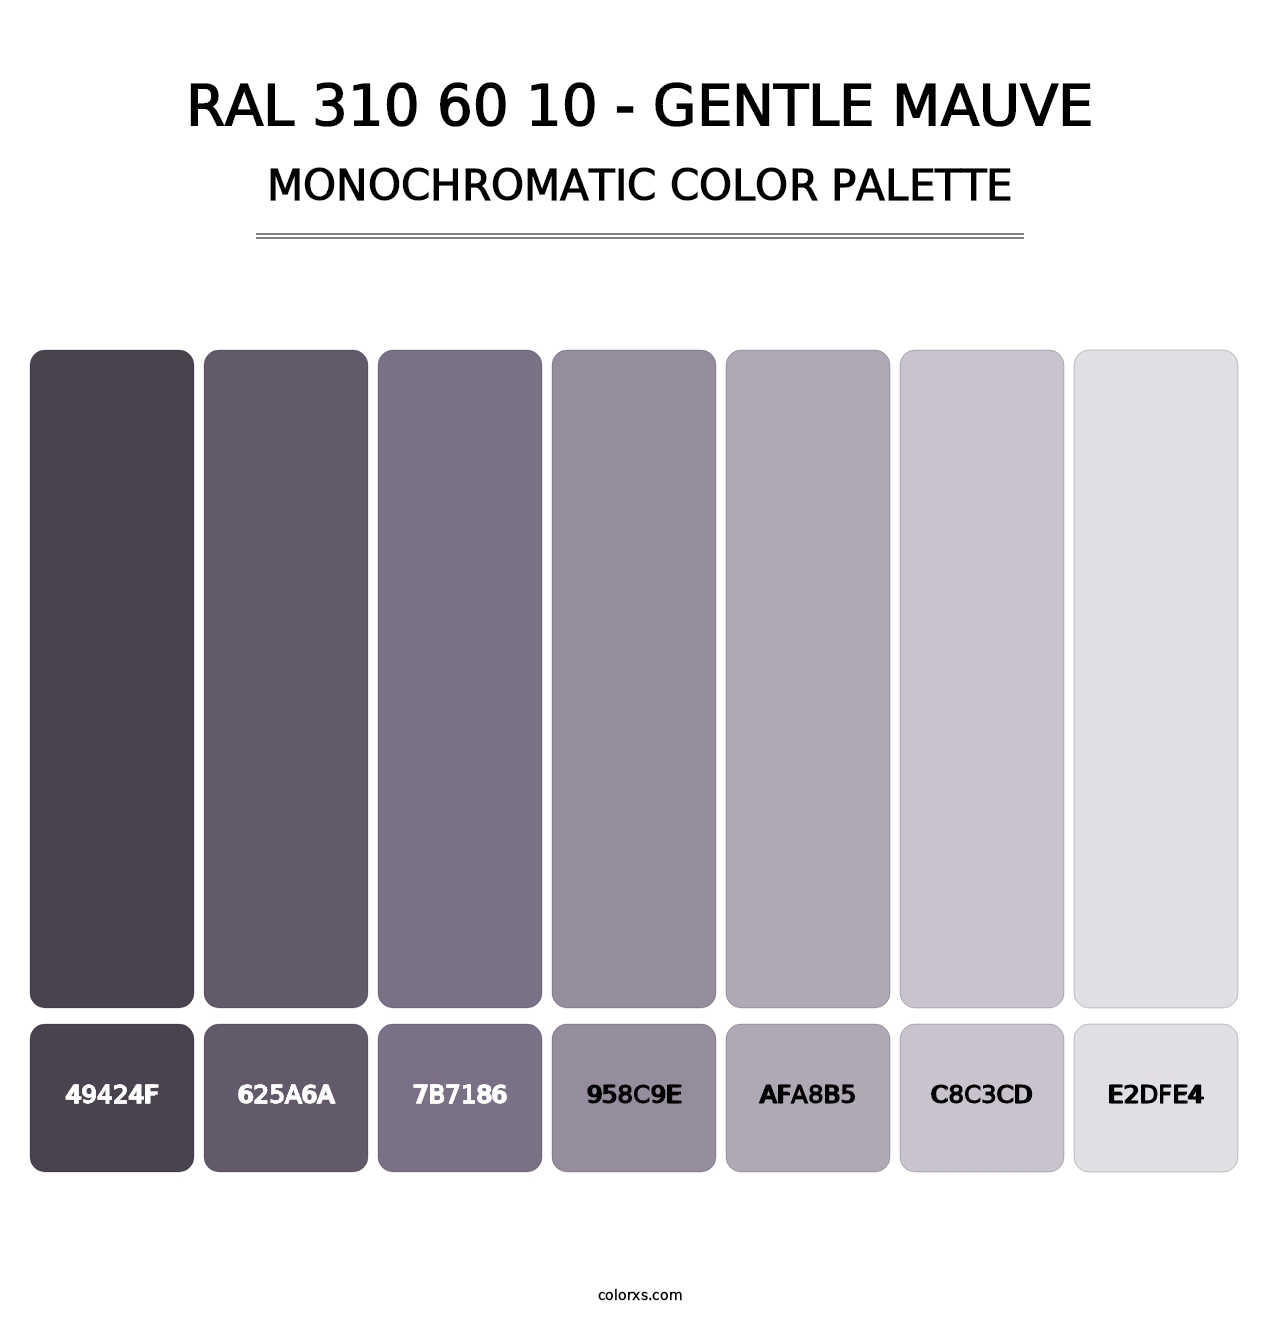 RAL 310 60 10 - Gentle Mauve - Monochromatic Color Palette